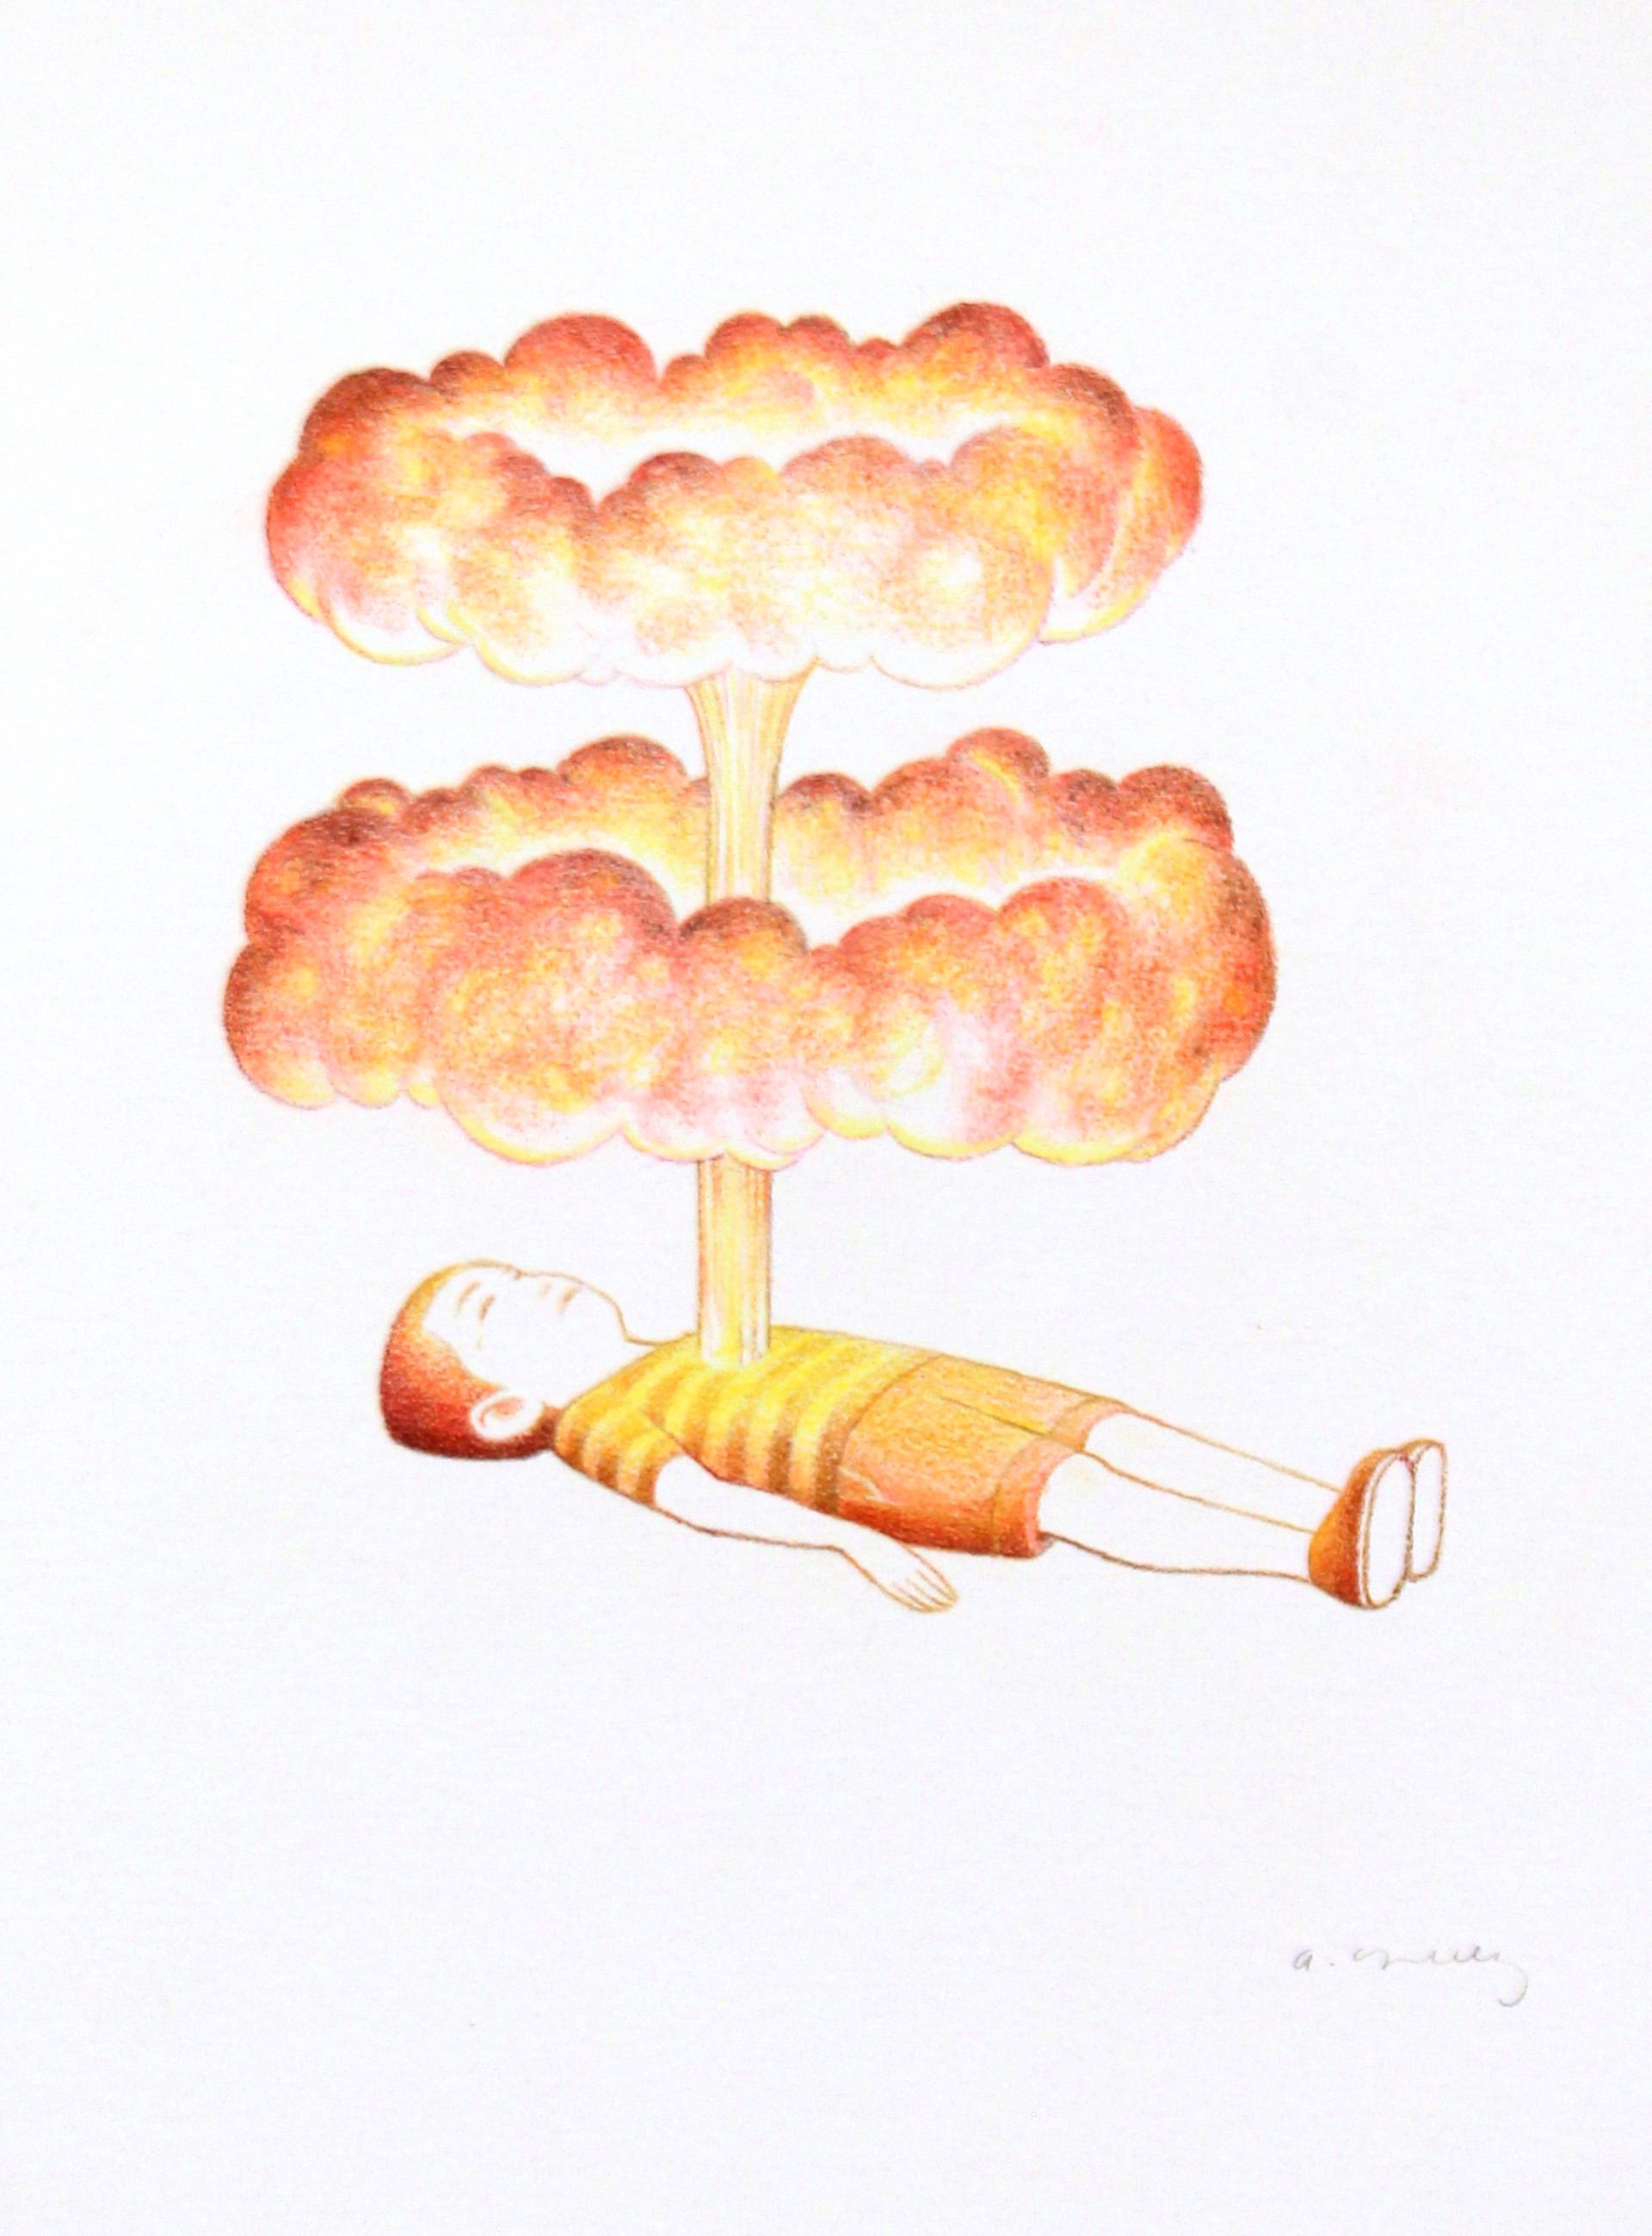 Explosión by Alberto Cruz